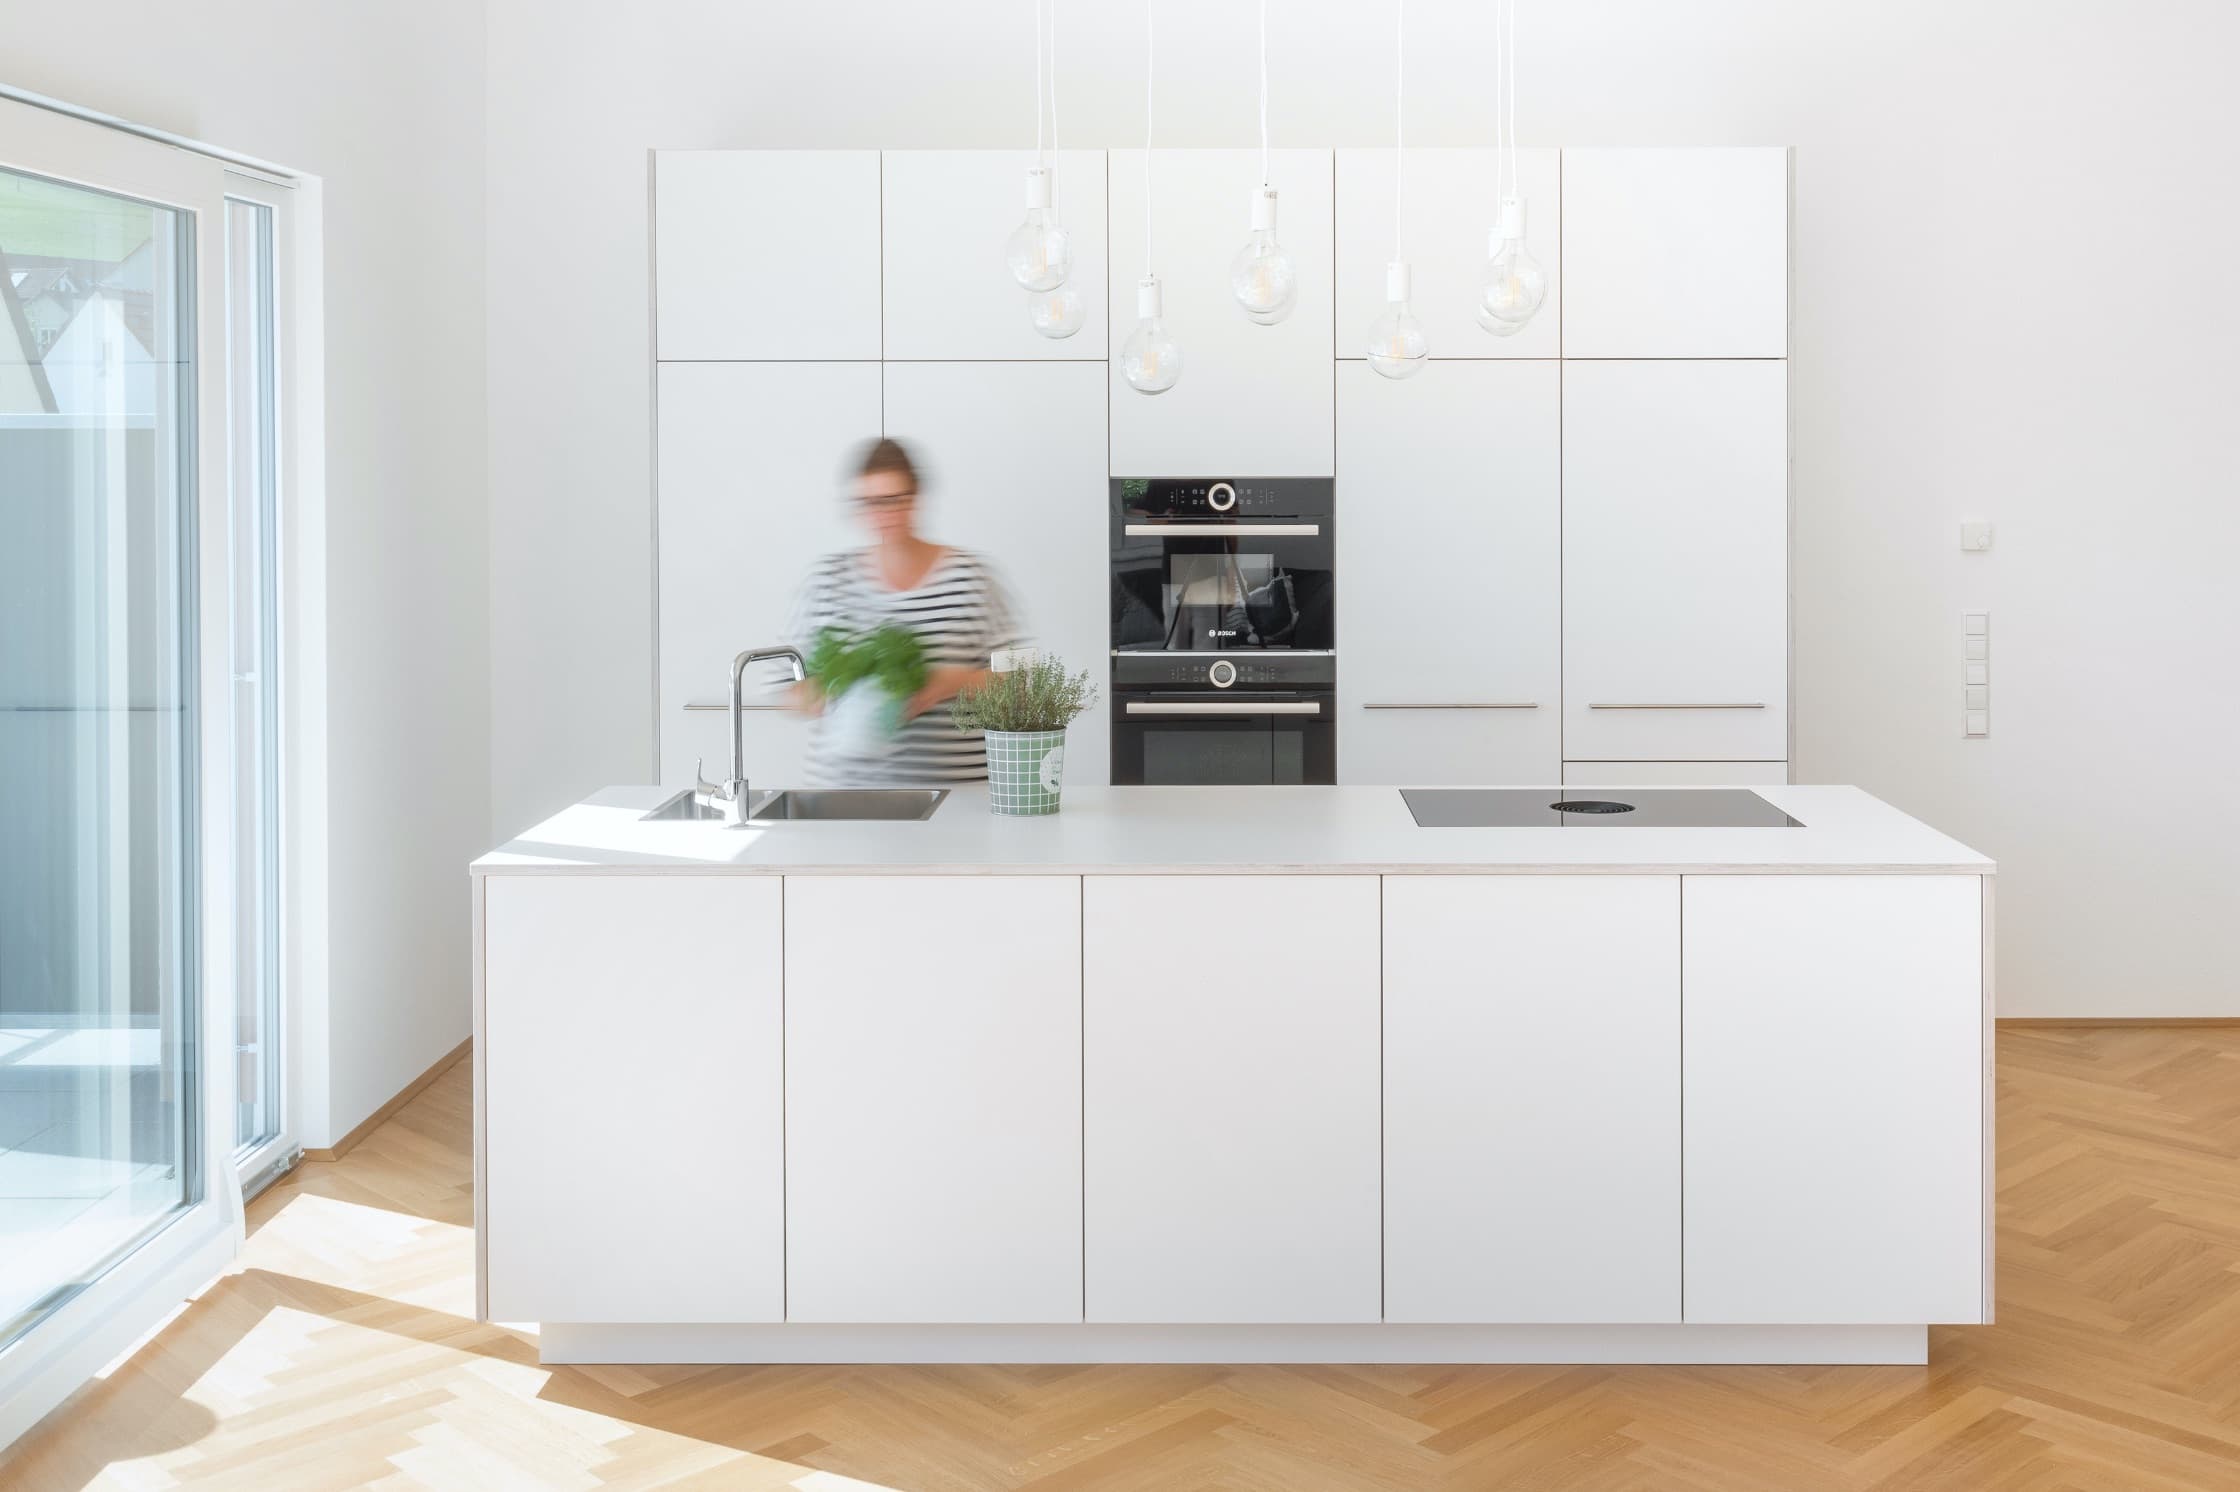 Minimalistische helle Küche mit versteckten Highlights